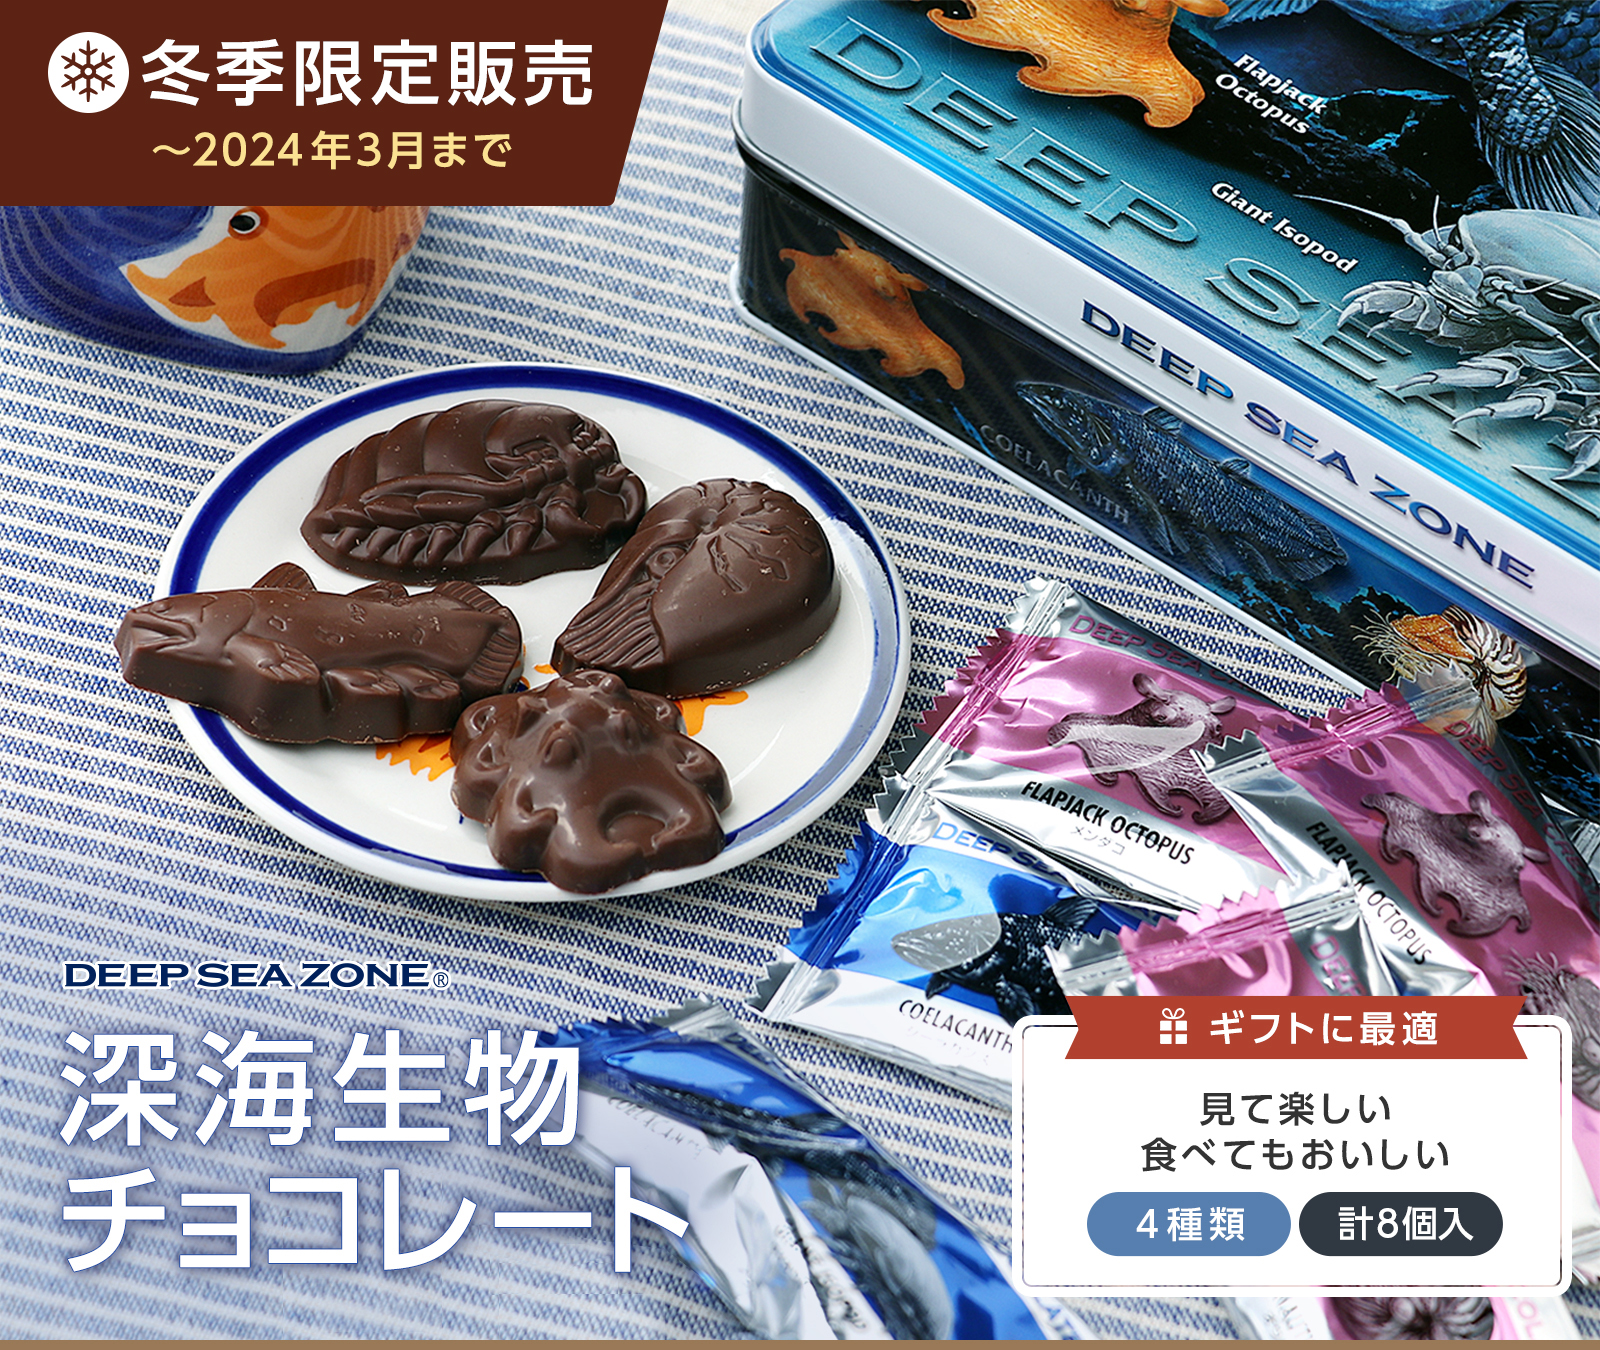 チョコレート 期間限定販売 深海生物チョコレート